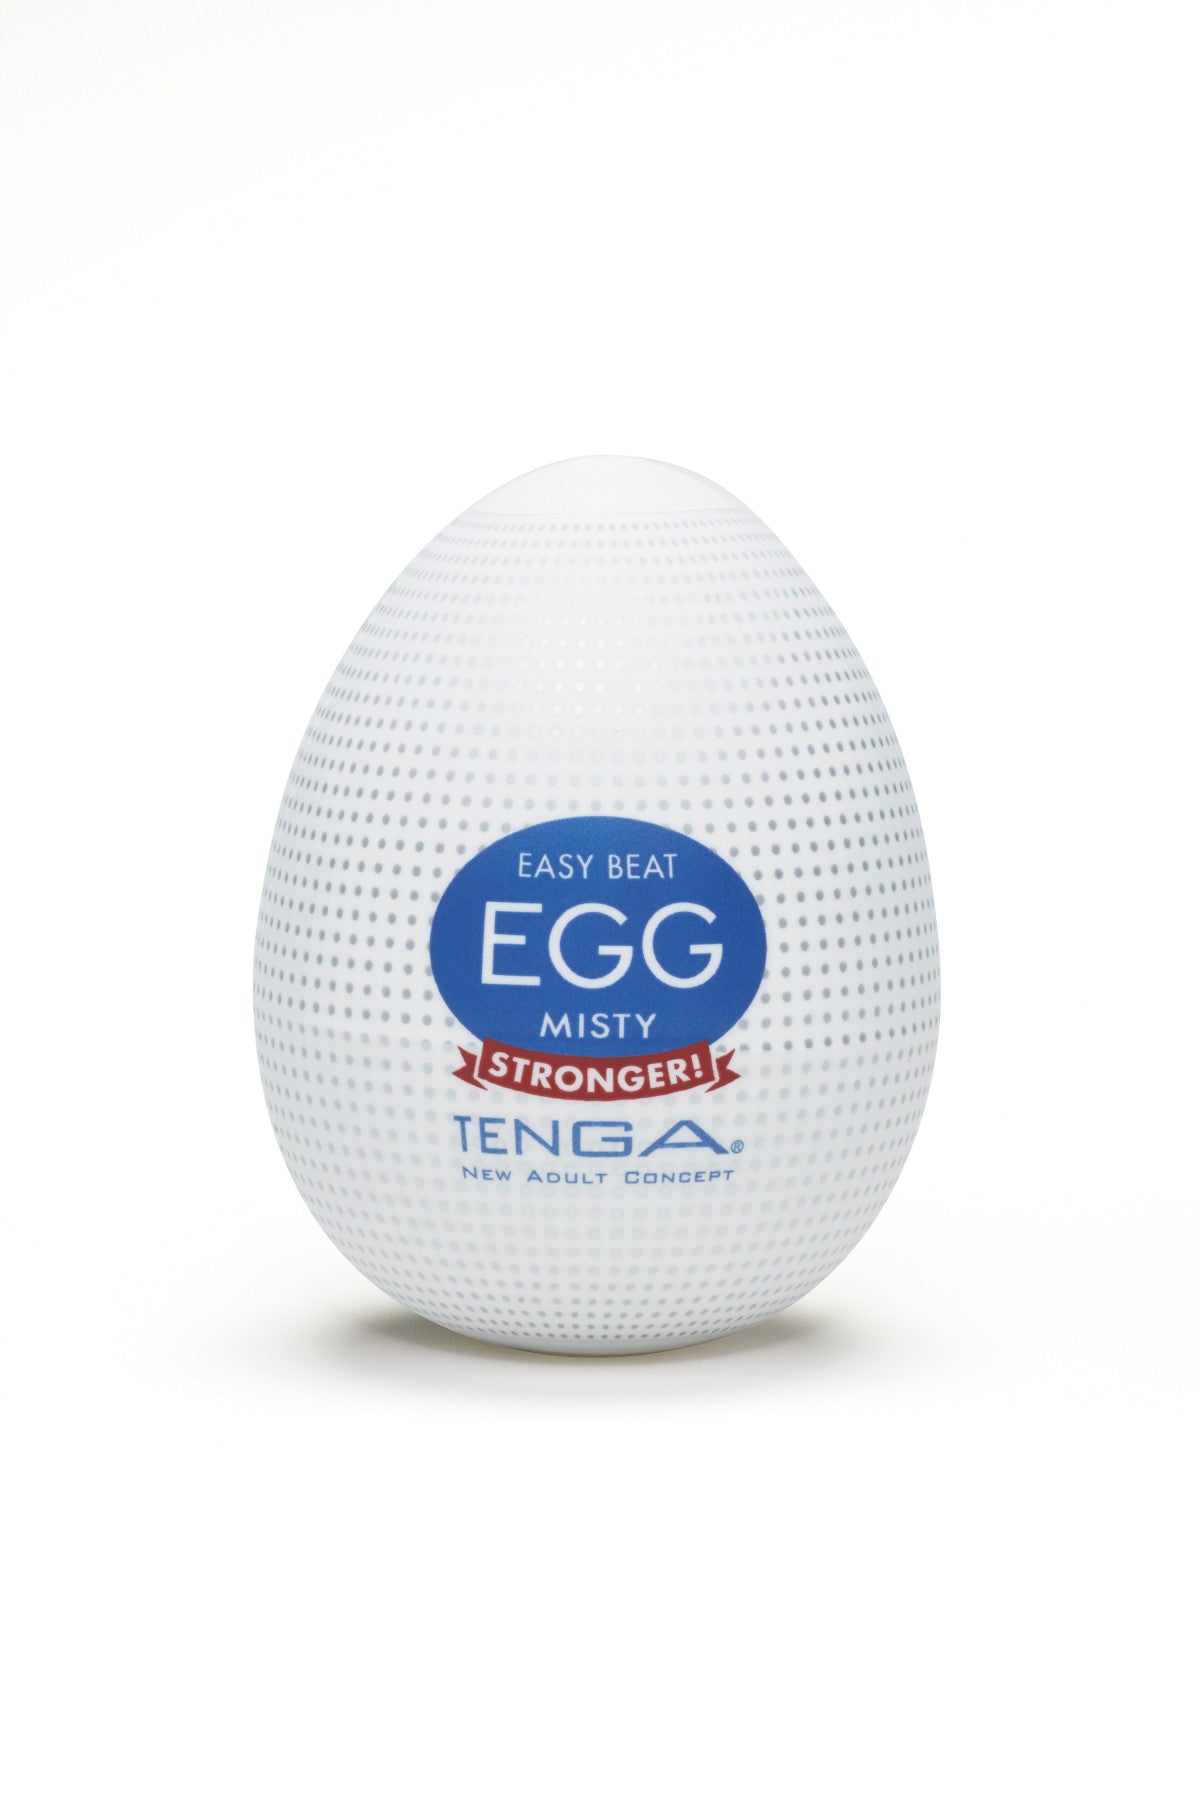 TENGA Easy Beat Egg 6pk - Hard Boiled